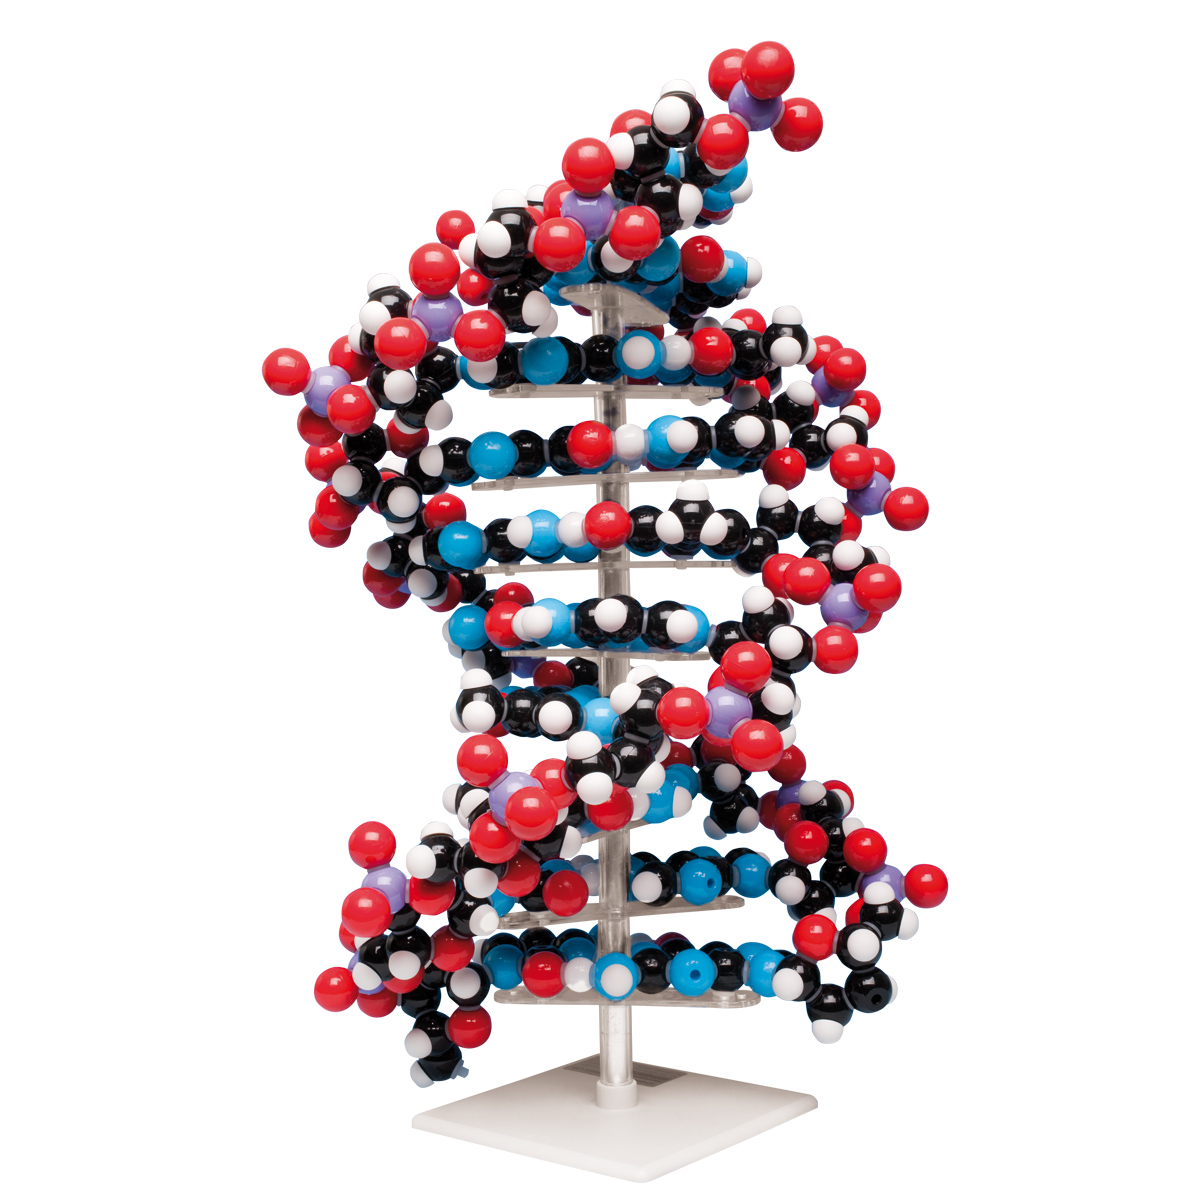 Modelo ADN de gran tamaño - 1020358 - W19755 - Molymod - MKS-122-10 -  Constitución y Función del ADN - 3B Scientific